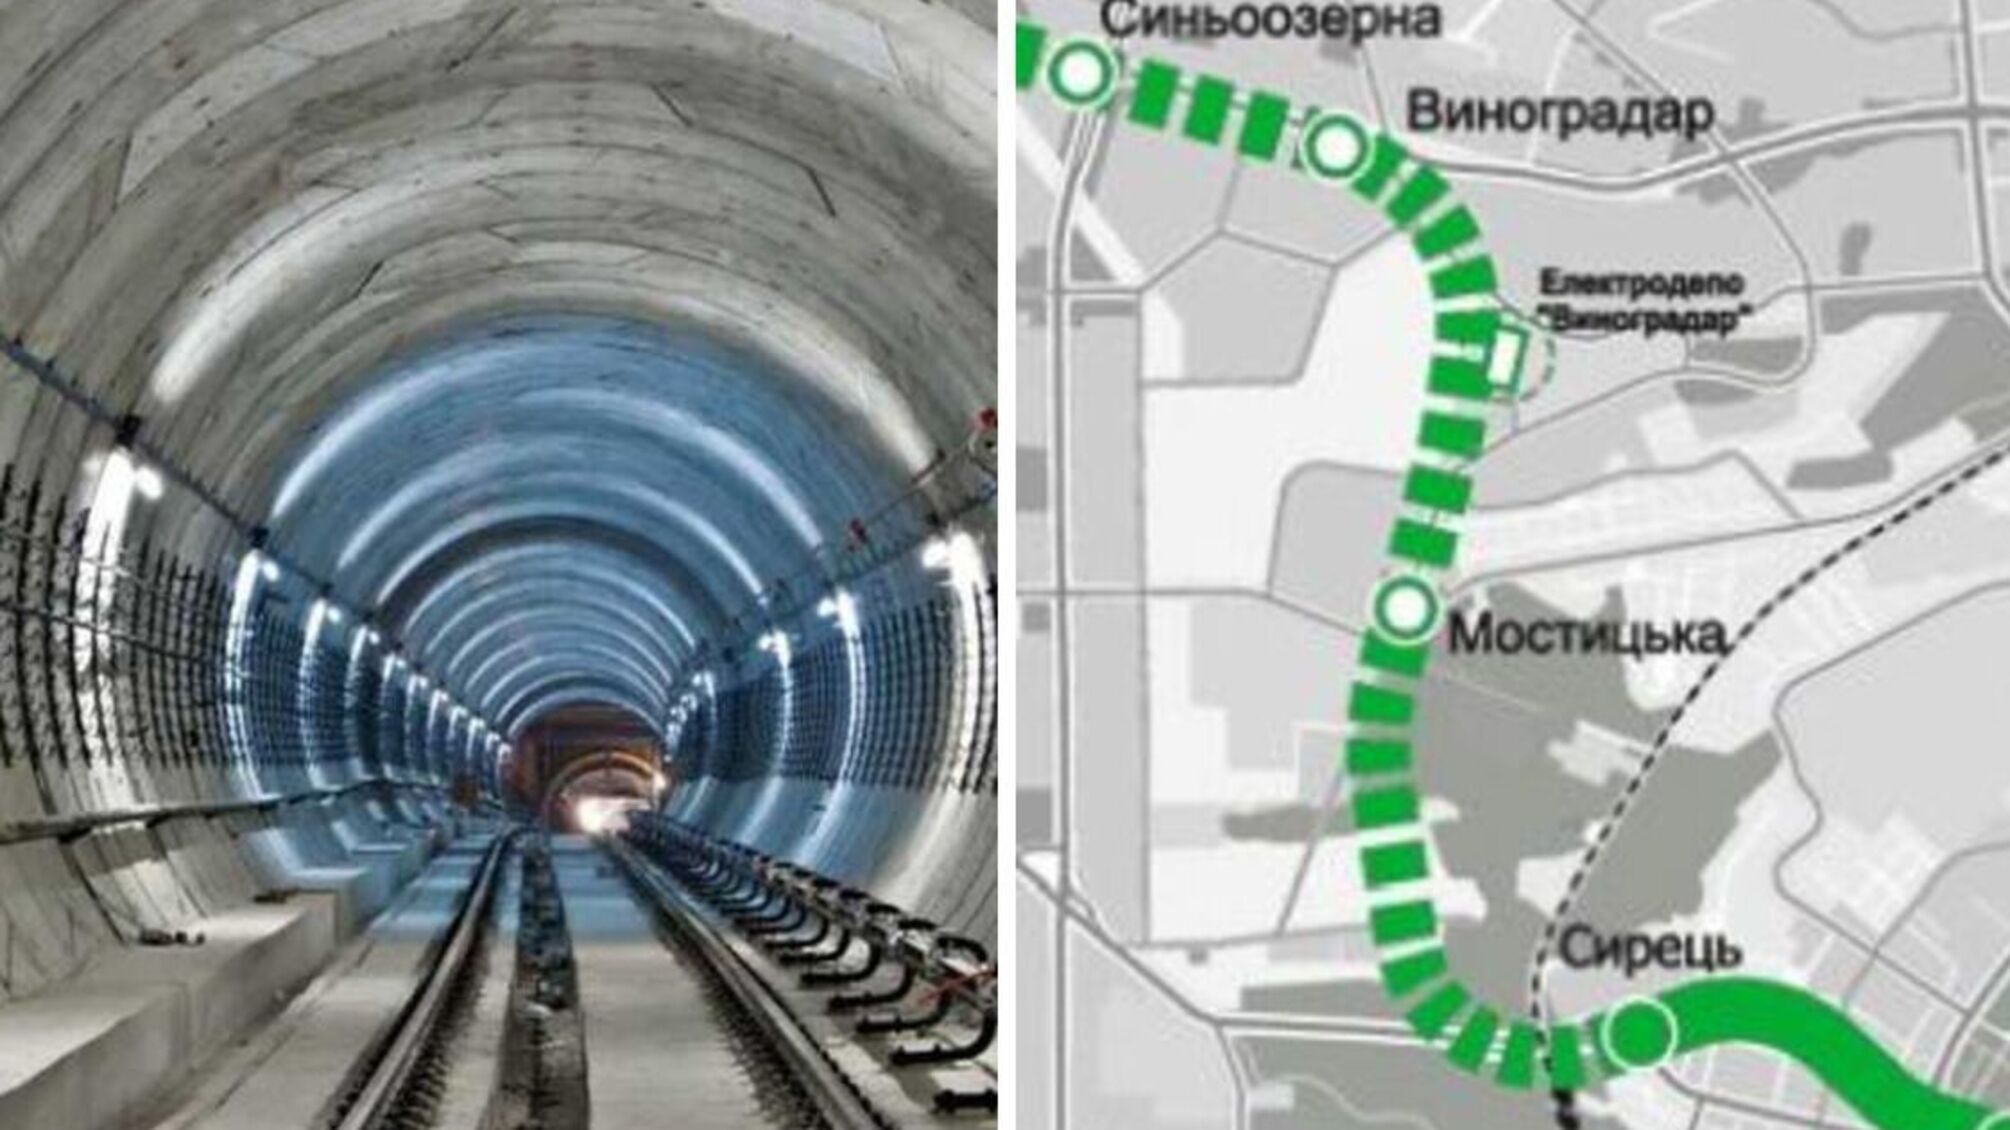 'Потеряли' 1,5 млрд грн: строительство метро на Виноградарь задерживается из-за нехватки денег?